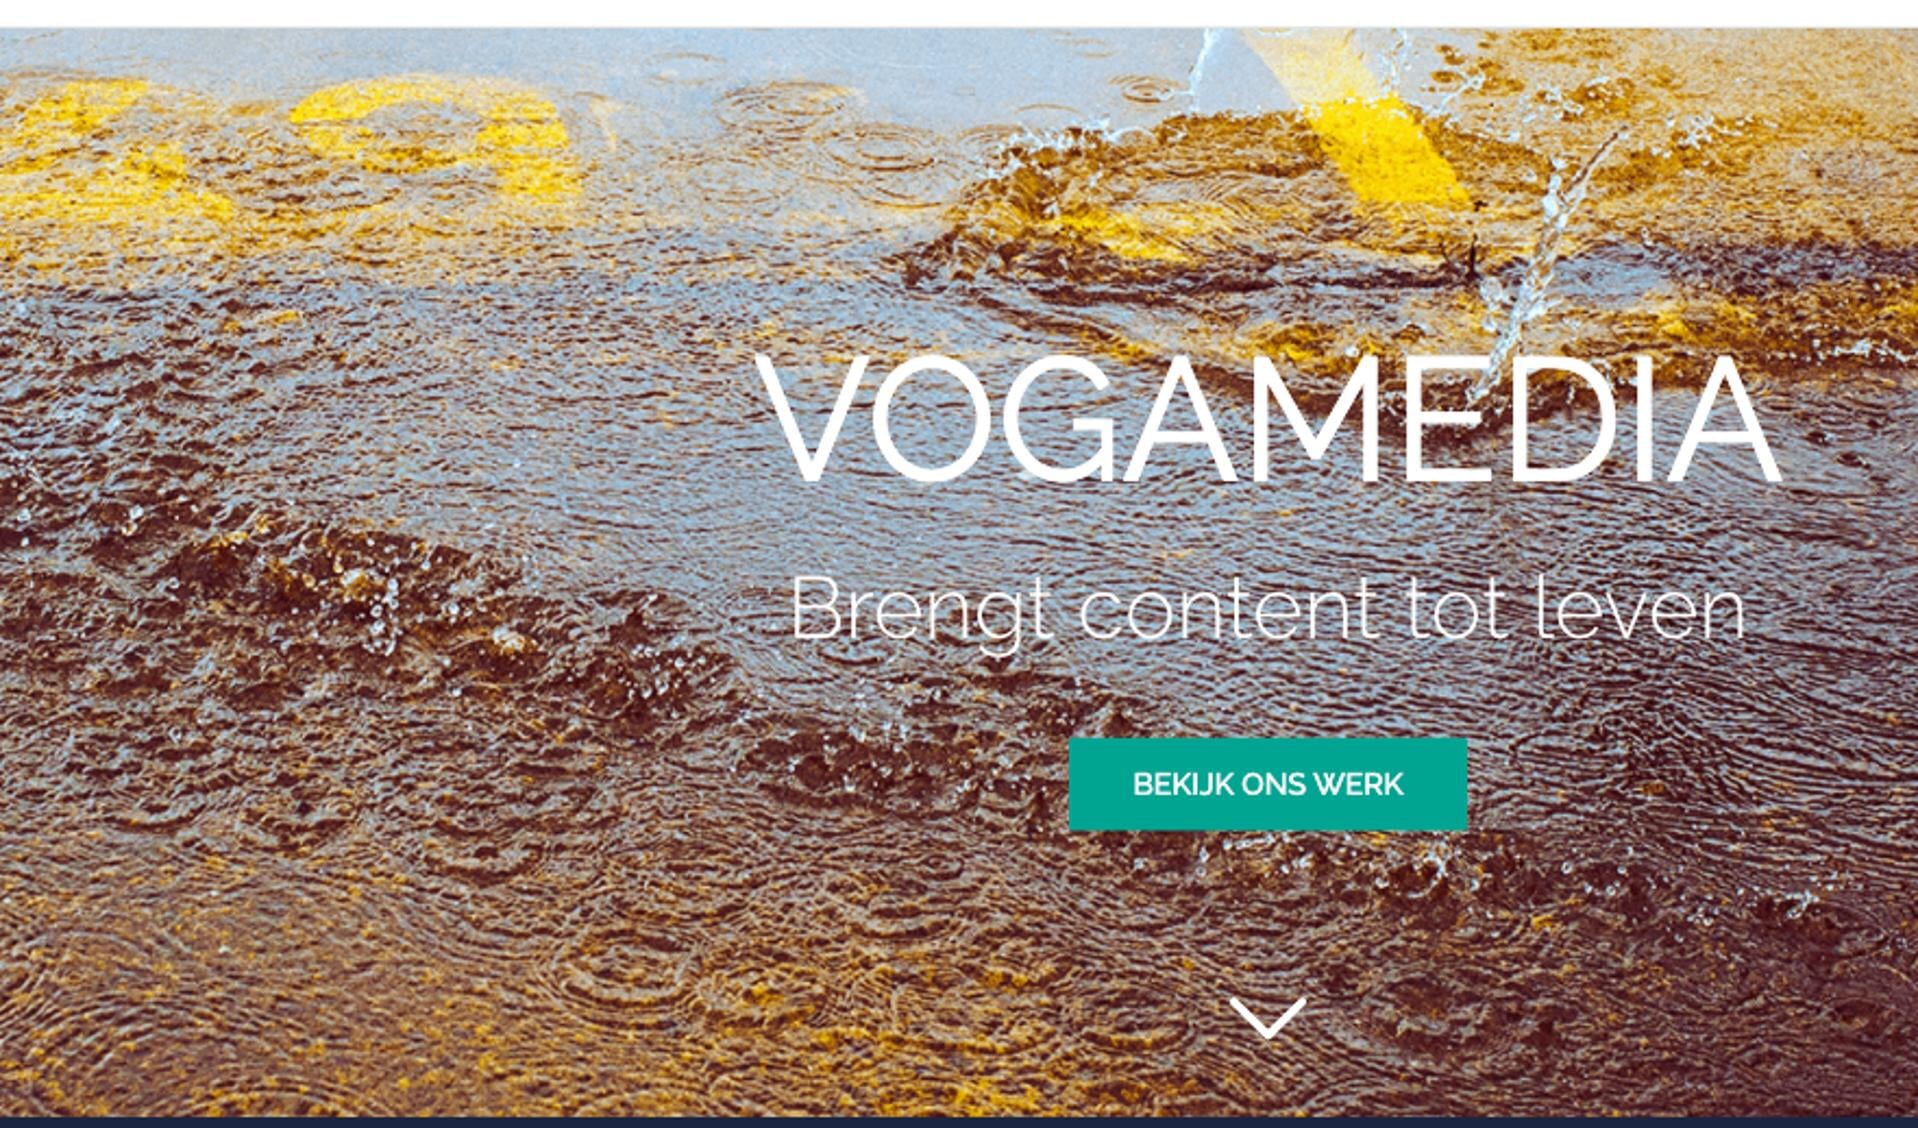 De website van VogaMedia.